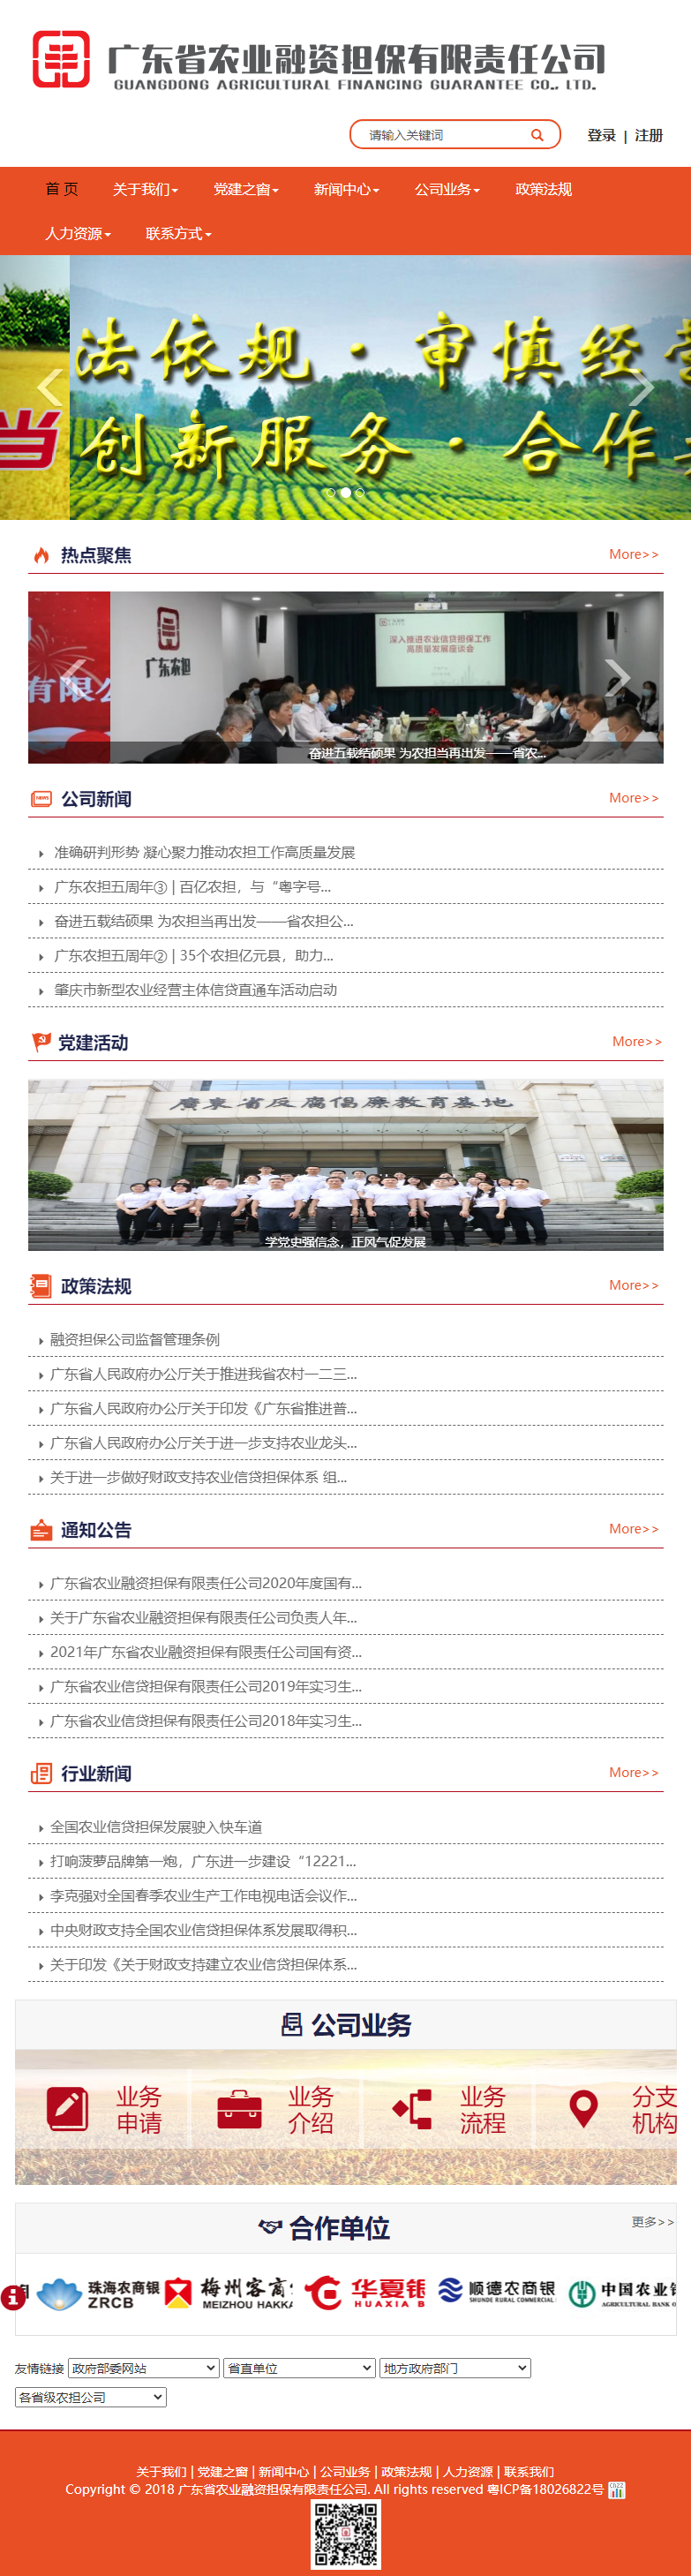 广东省农业融资担保有限责任公司网站案例